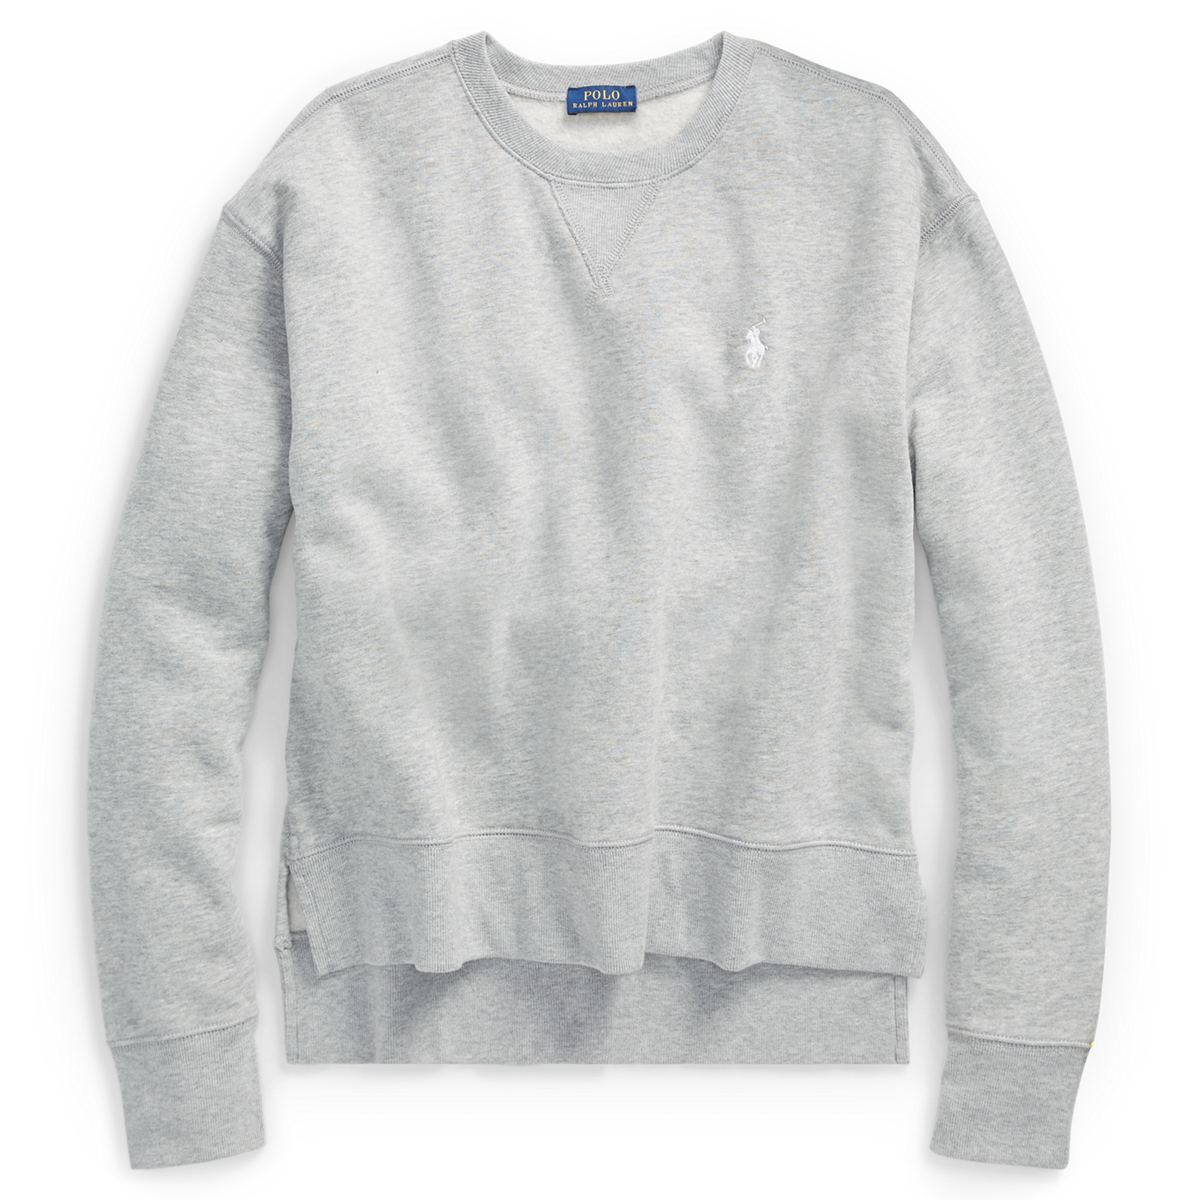 Fleece Crewneck Sweatshirt | Tees & Sweatshirts Shirts & Tops | Ralph Lauren